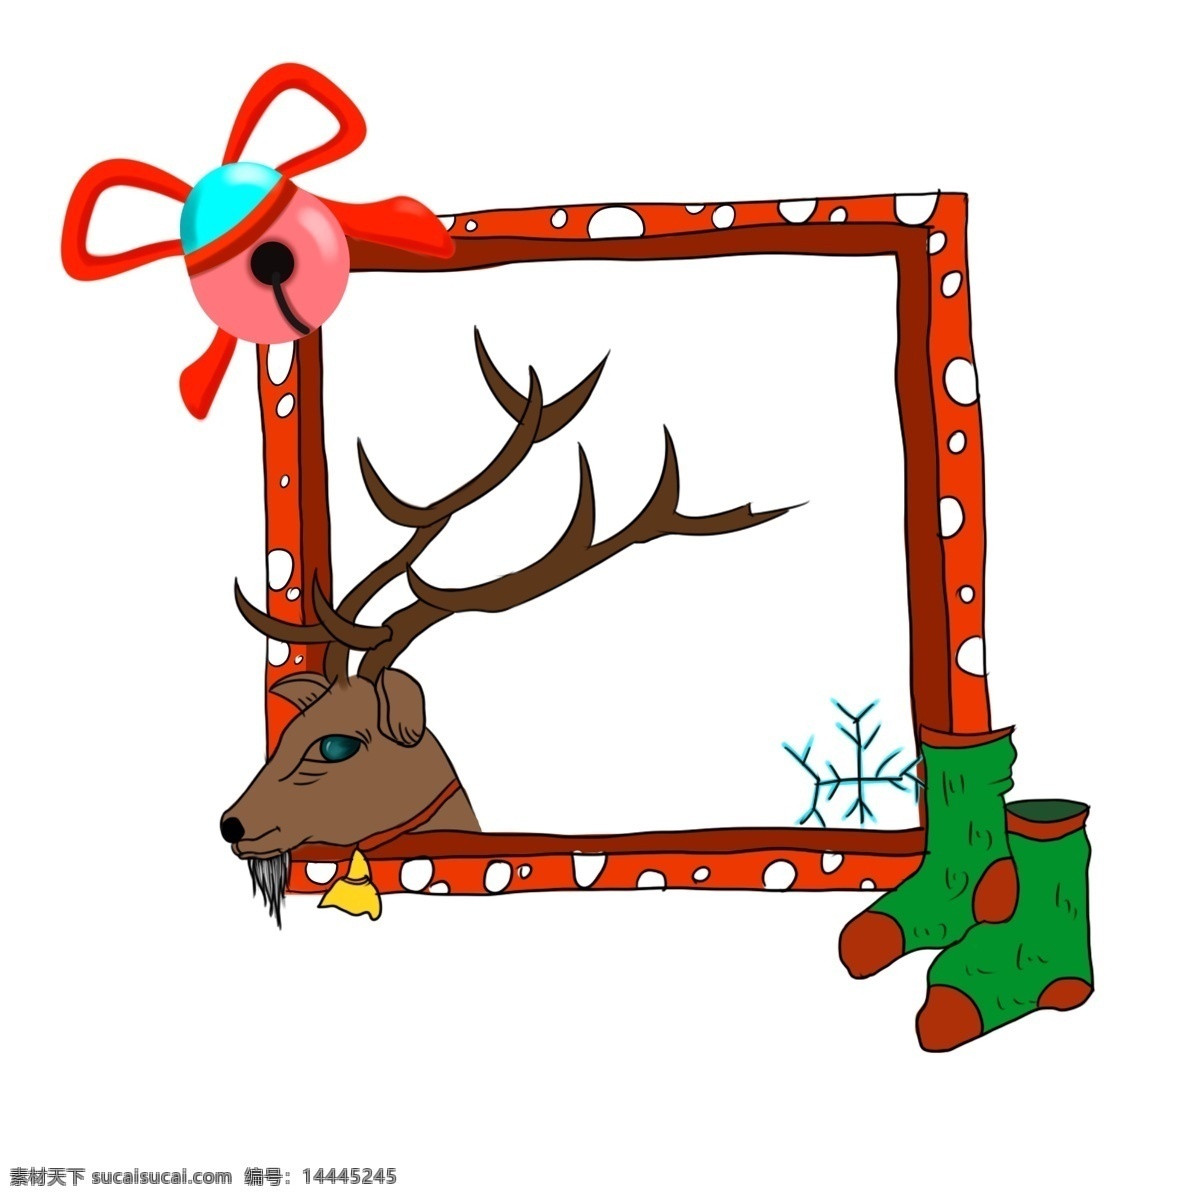 圣诞 卡通 手绘 风 边框 圣诞节 圣诞节快乐 过节日 西方节日 西方传统节日 卡通手绘风 暖色系 手绘边框 袜子 鹿